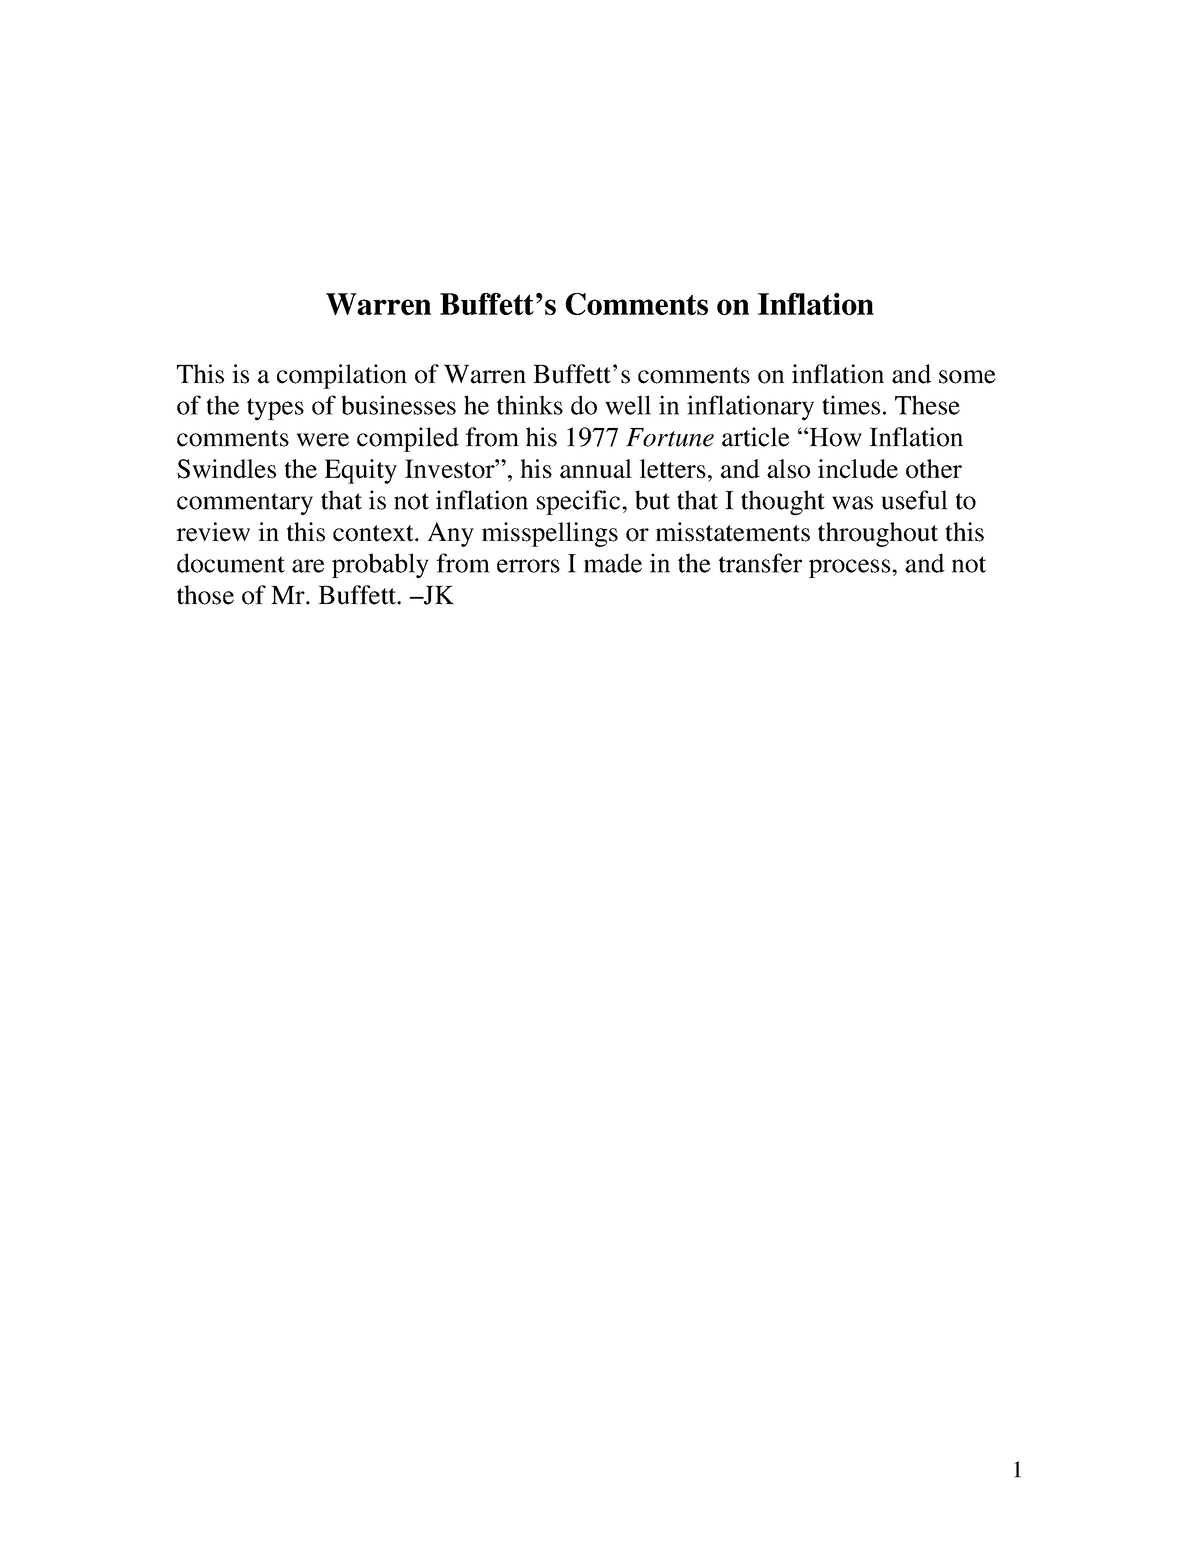 warren buffett inflation essay